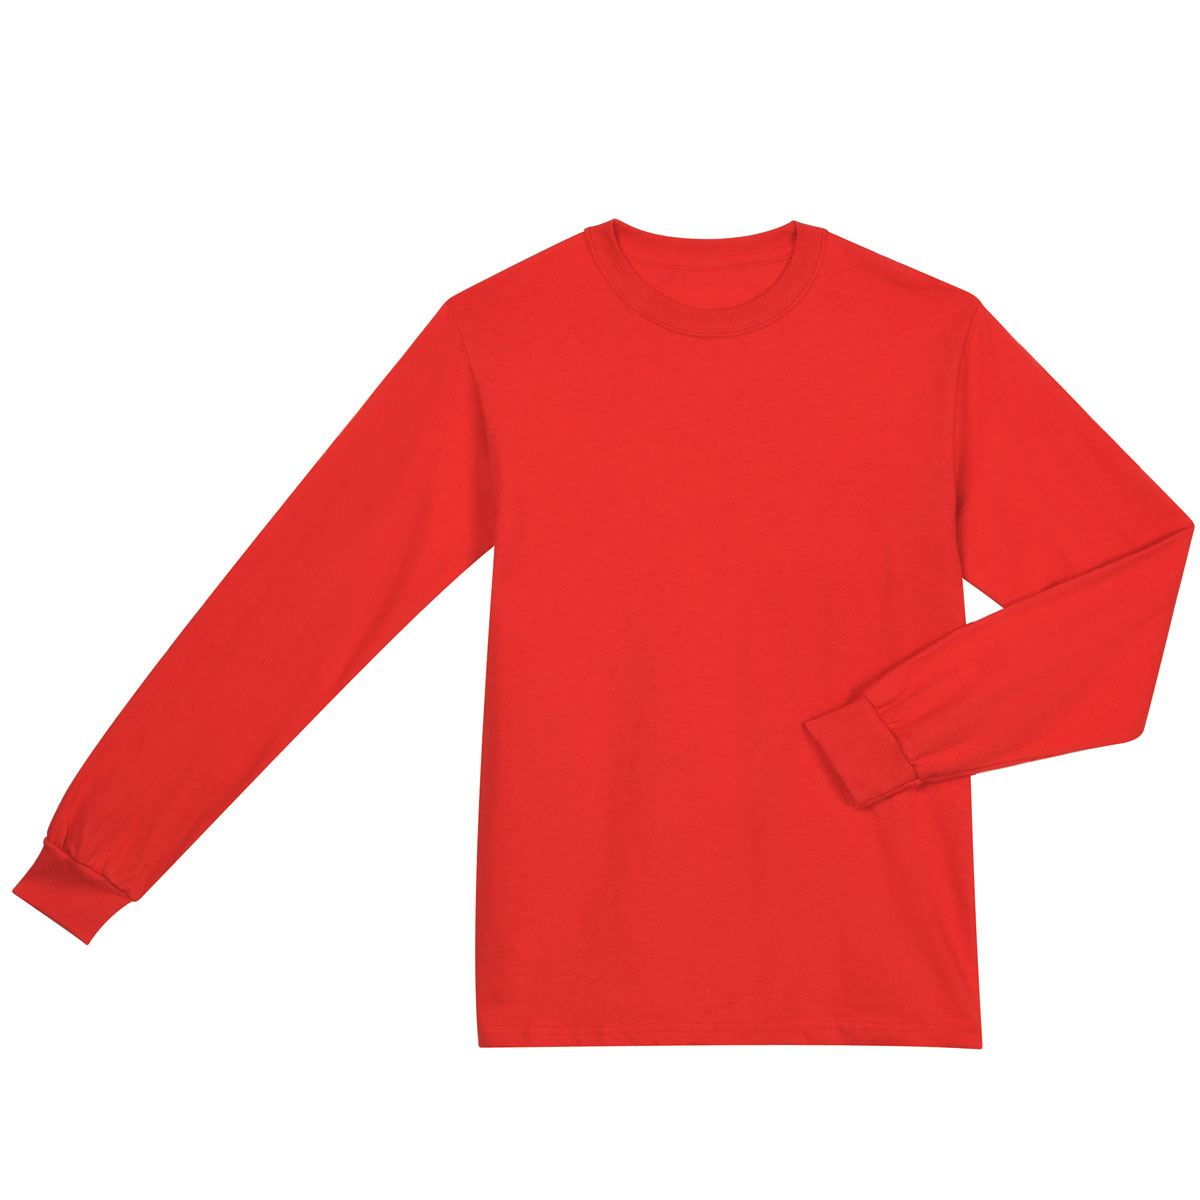 red full sleeve shirt